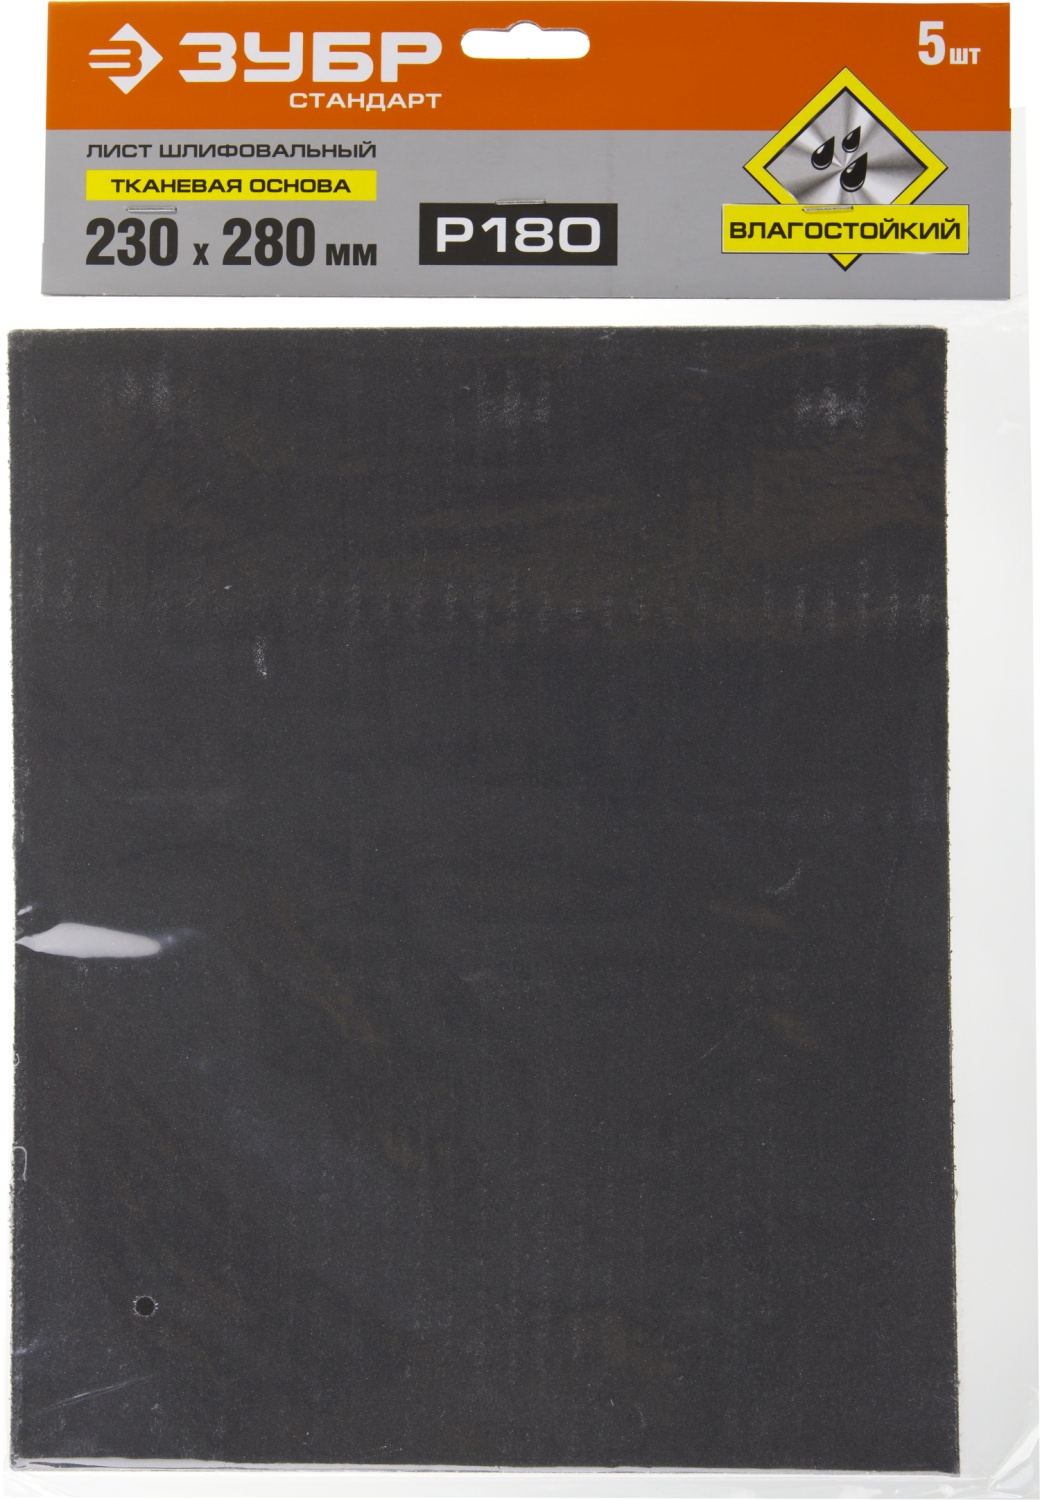 Лист шлифовальный водостойкий 230х280 мм Р-180 ЗУБР Стандарт 35415-180, тканевая основа, 5 шт - фото